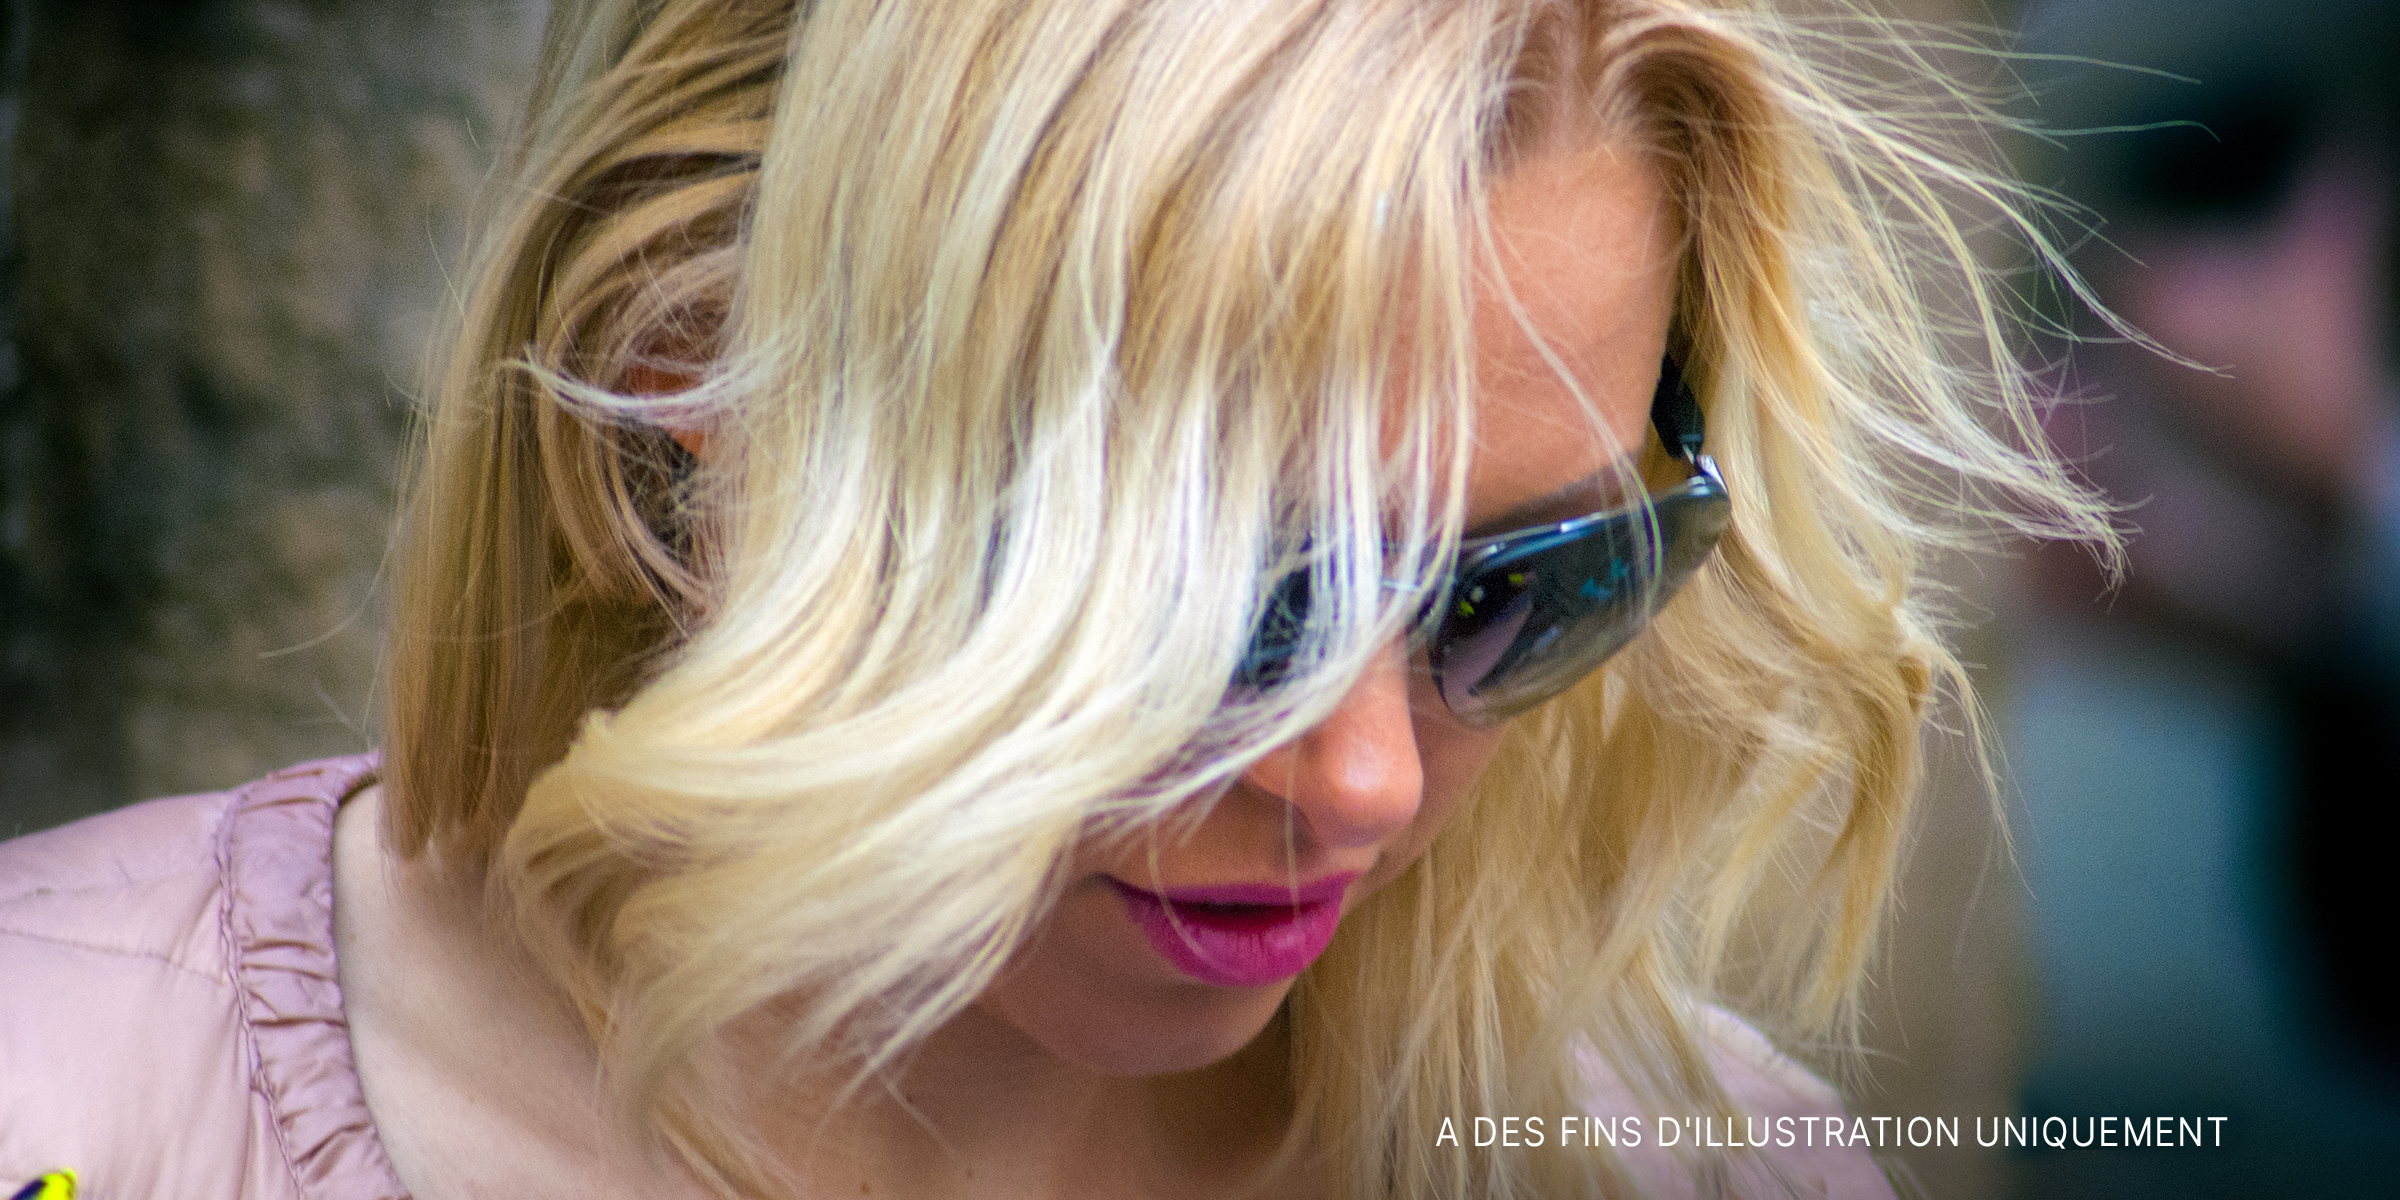 Une femme aux cheveux blonds qui regarde vers le bas en portant des lunettes de soleil | Source : Flickr.com/g_u/CC BY-SA 2.0